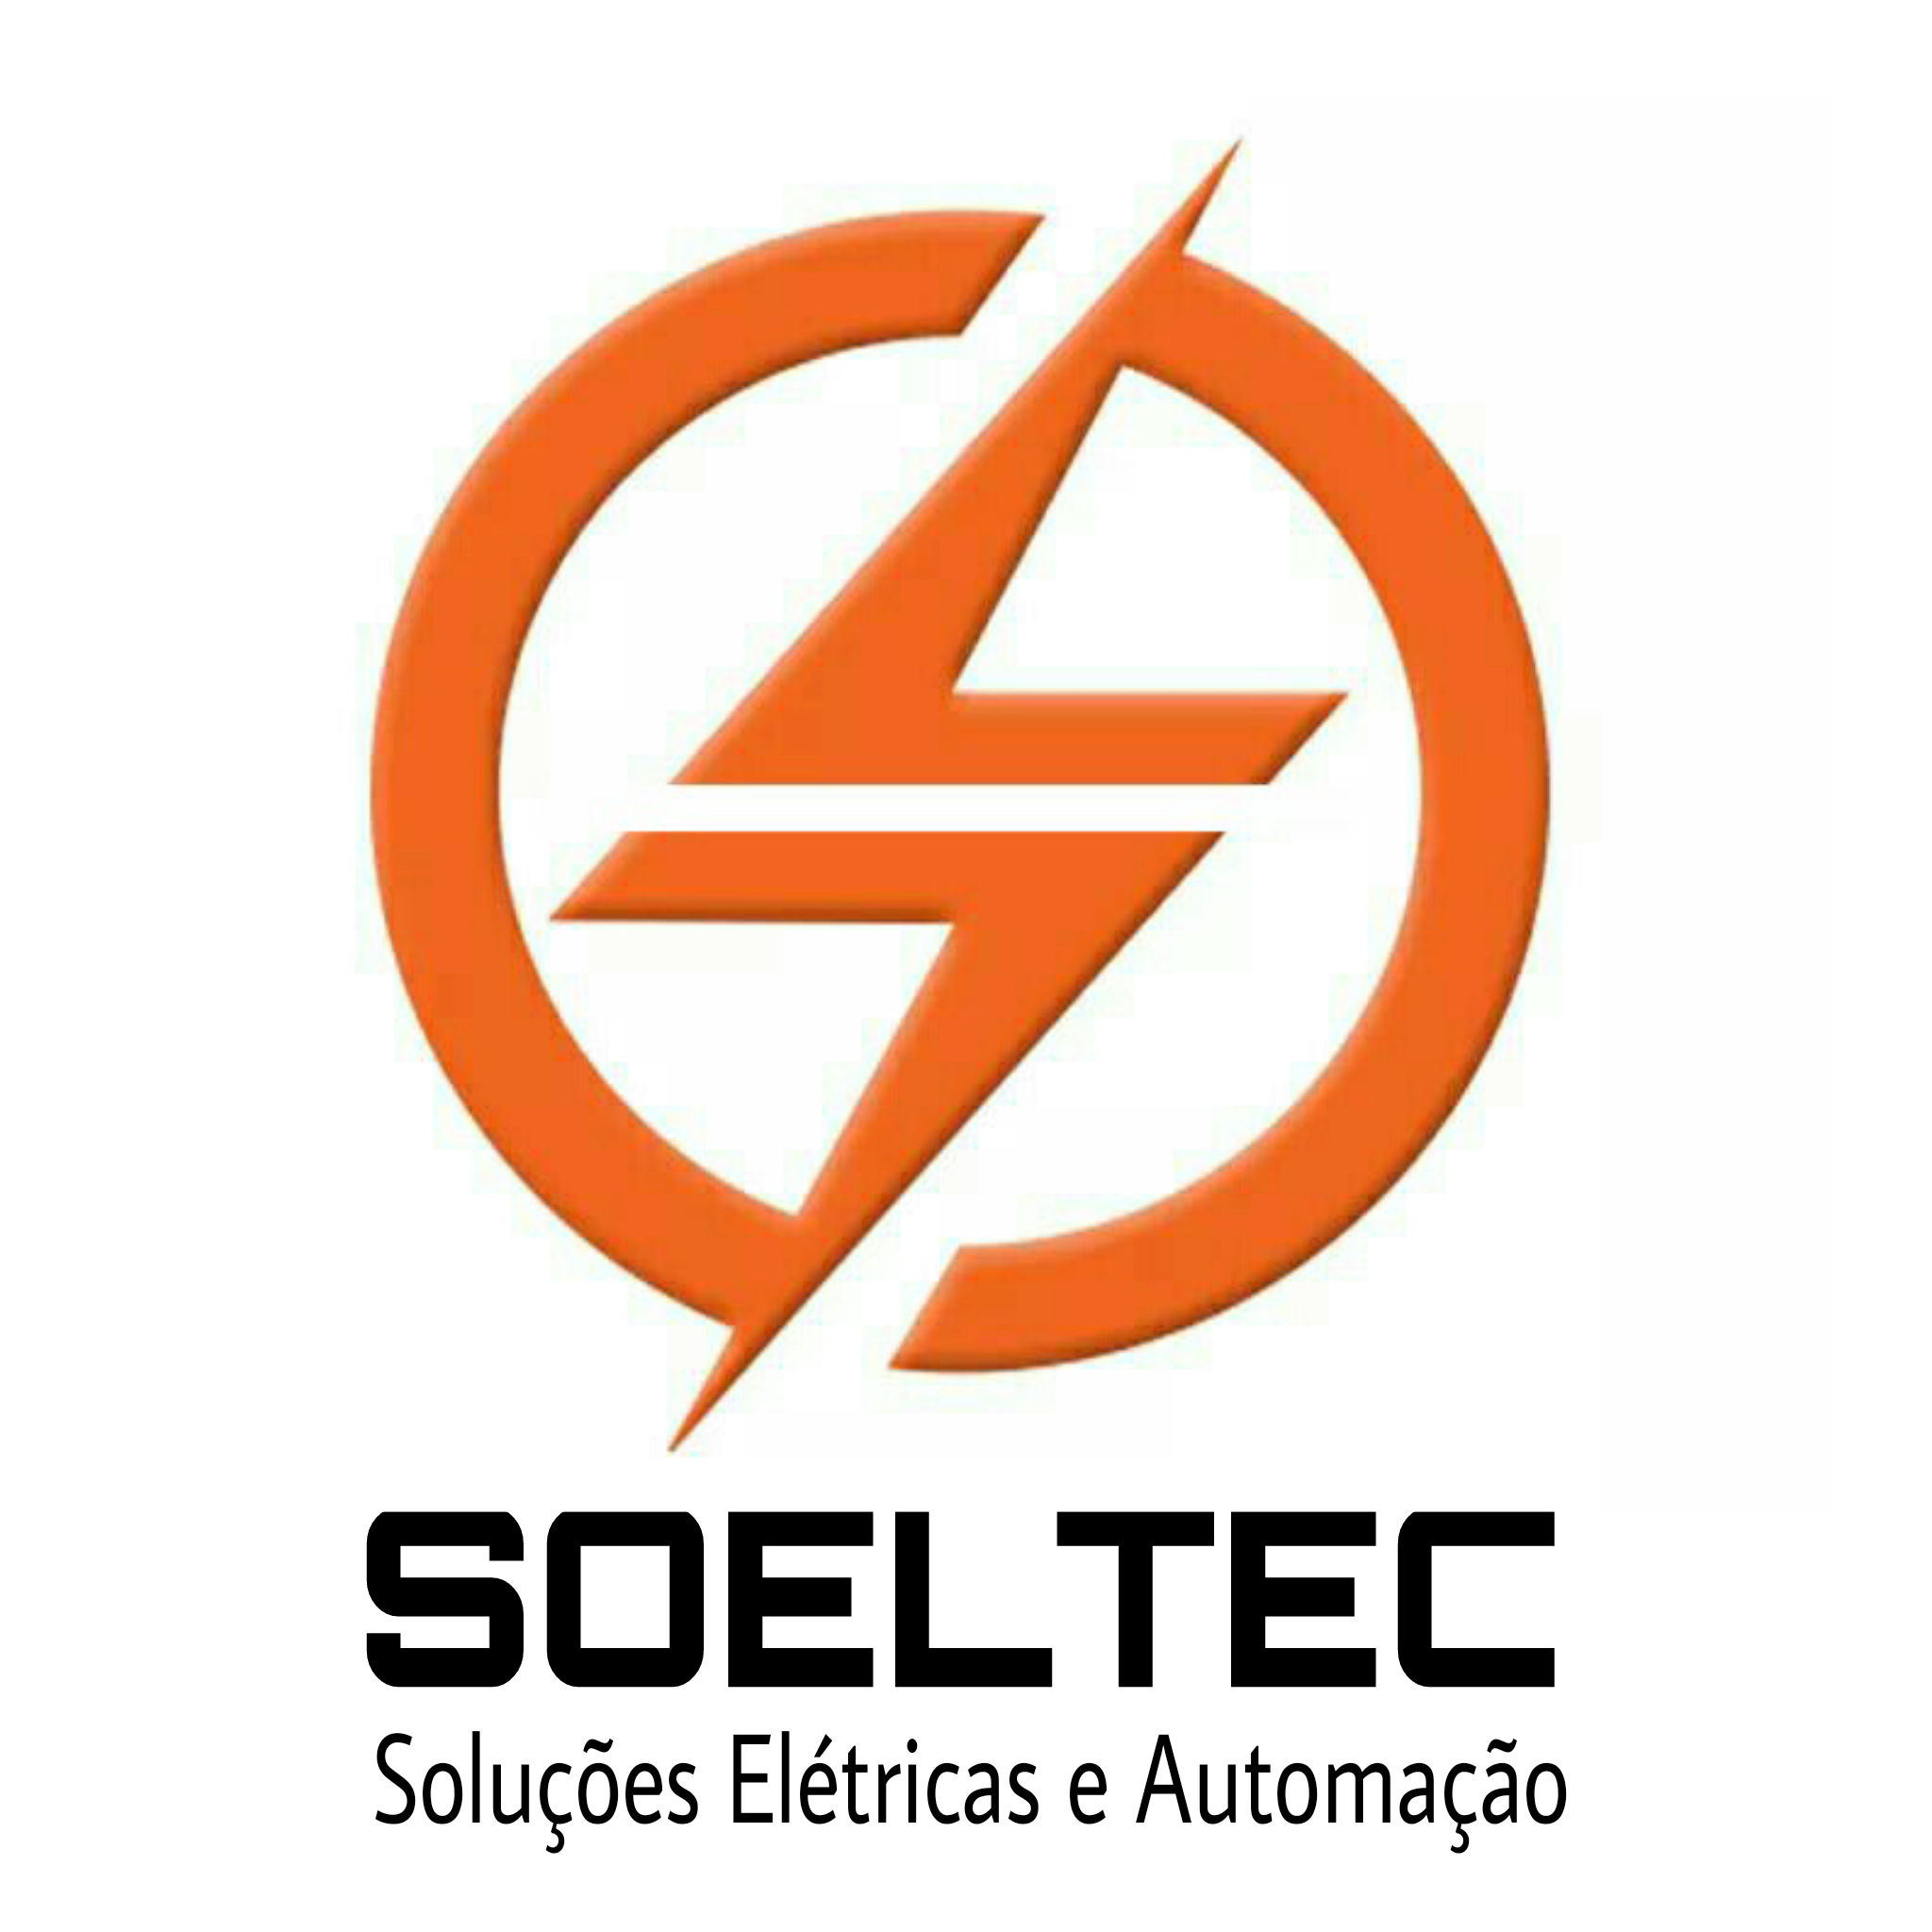 SOELTEC SOLUÇÕES ELÉTRICAS - Automação Residencial e Predial - Rio de Janeiro, RJ